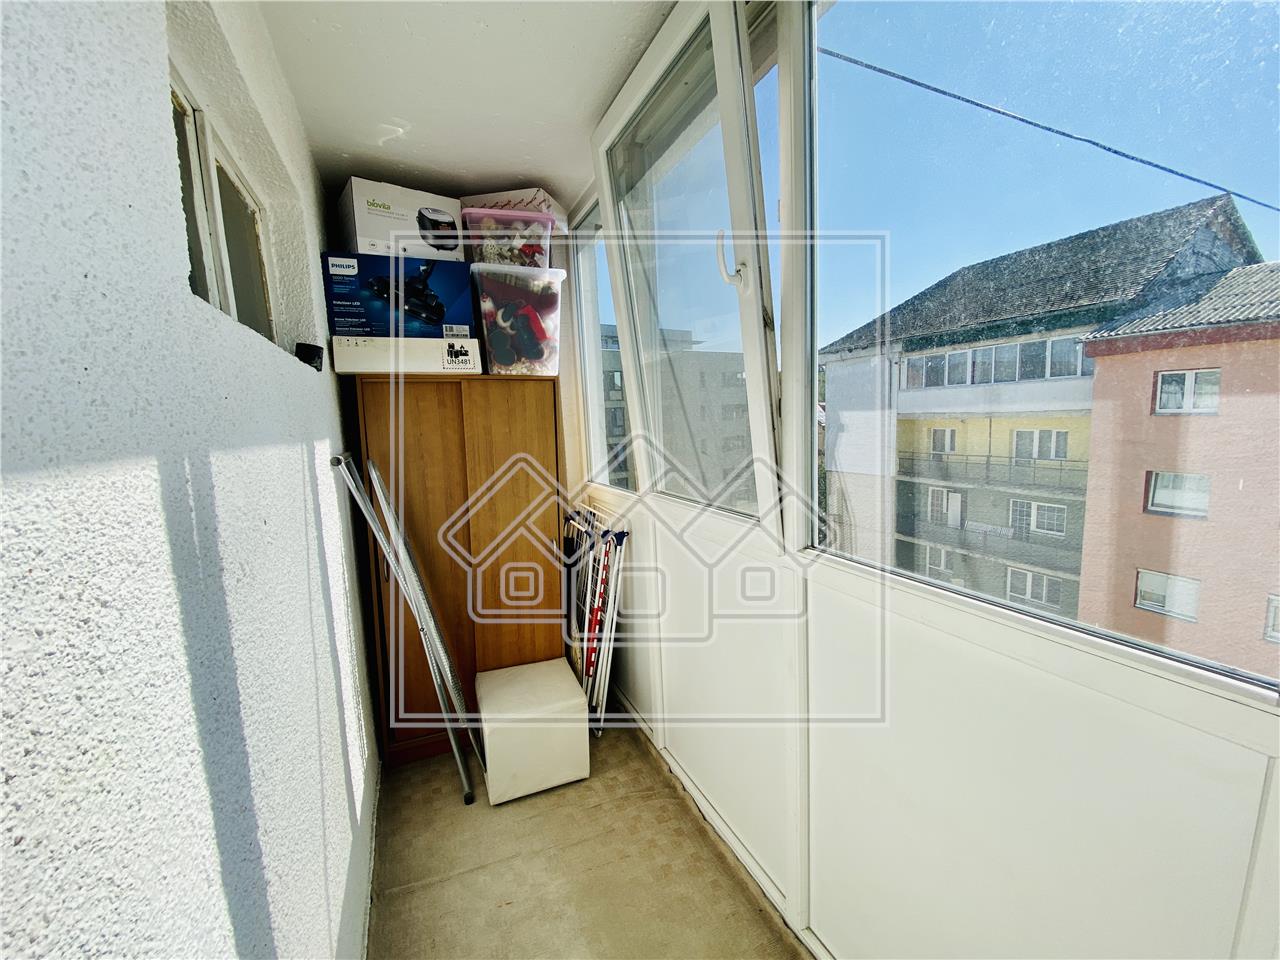 Apartament de vanzare in Sibiu - 3 camere,2 balcoane - Strand